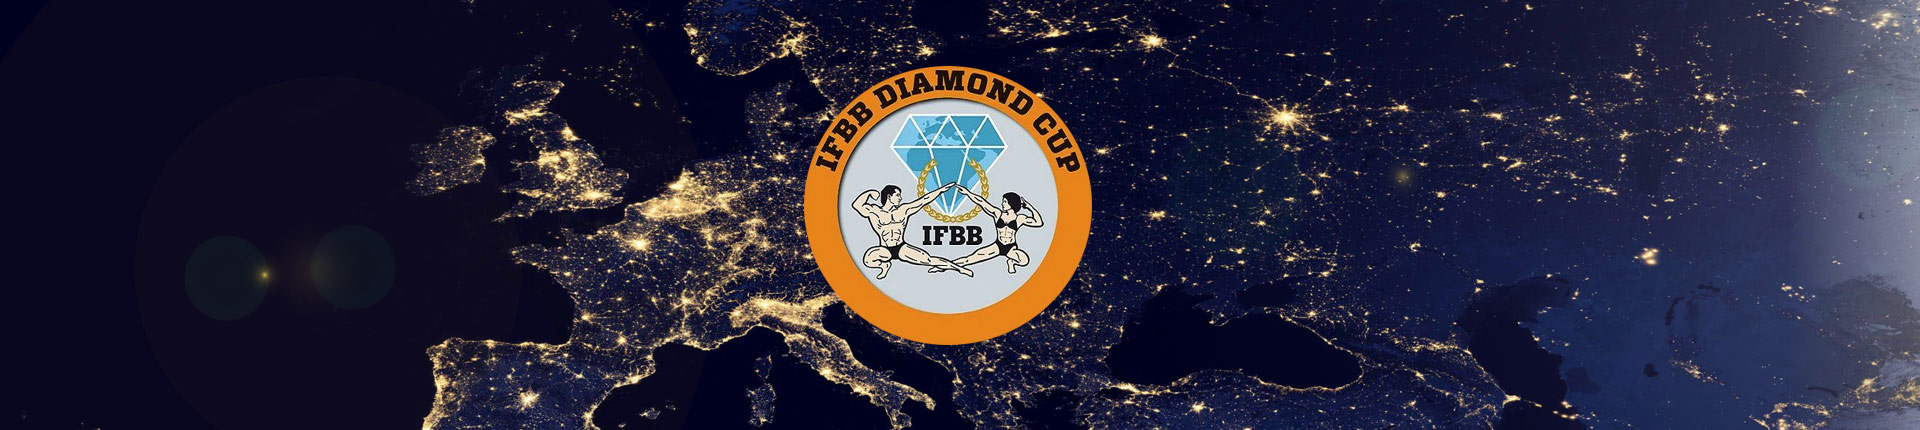 Diamond Cup Roma 2018 Wyniki i podsumowanie 